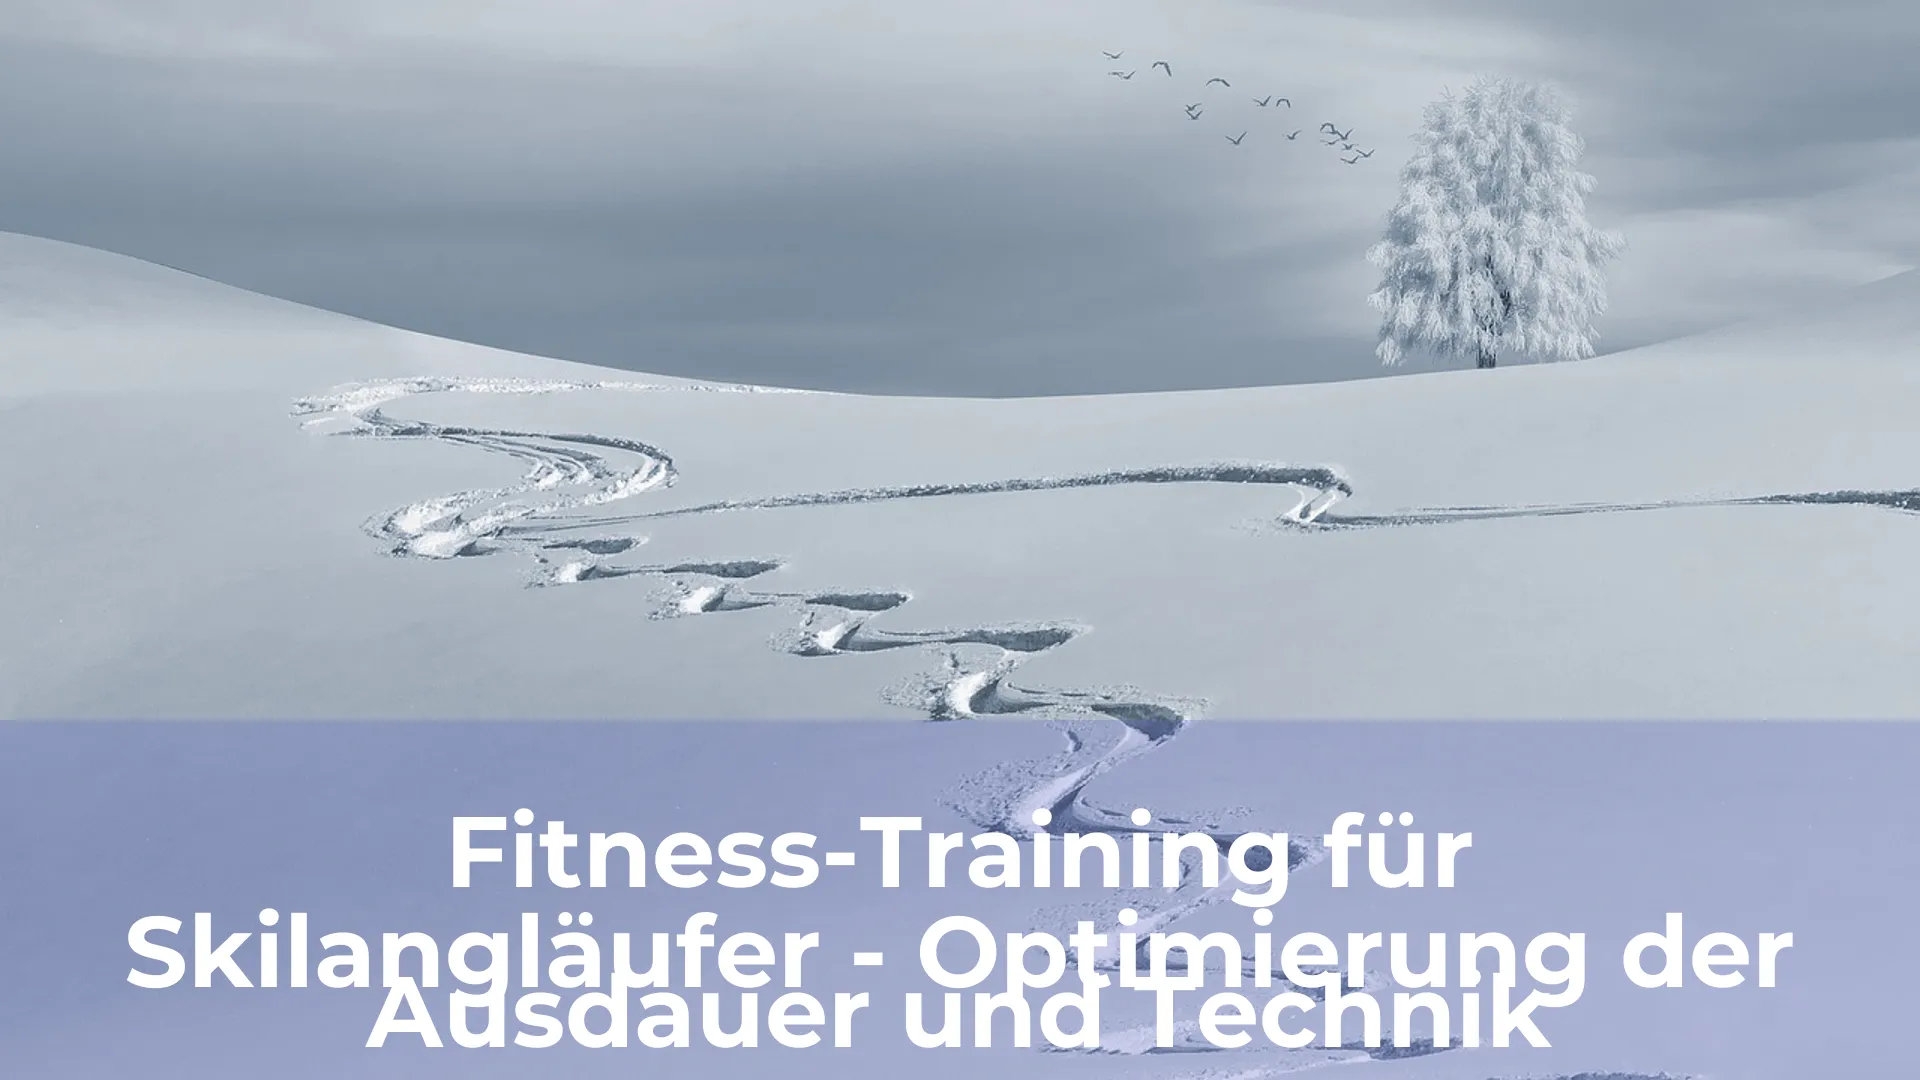 Fitness training für skilangläufer optimierung der ausdauer und technik